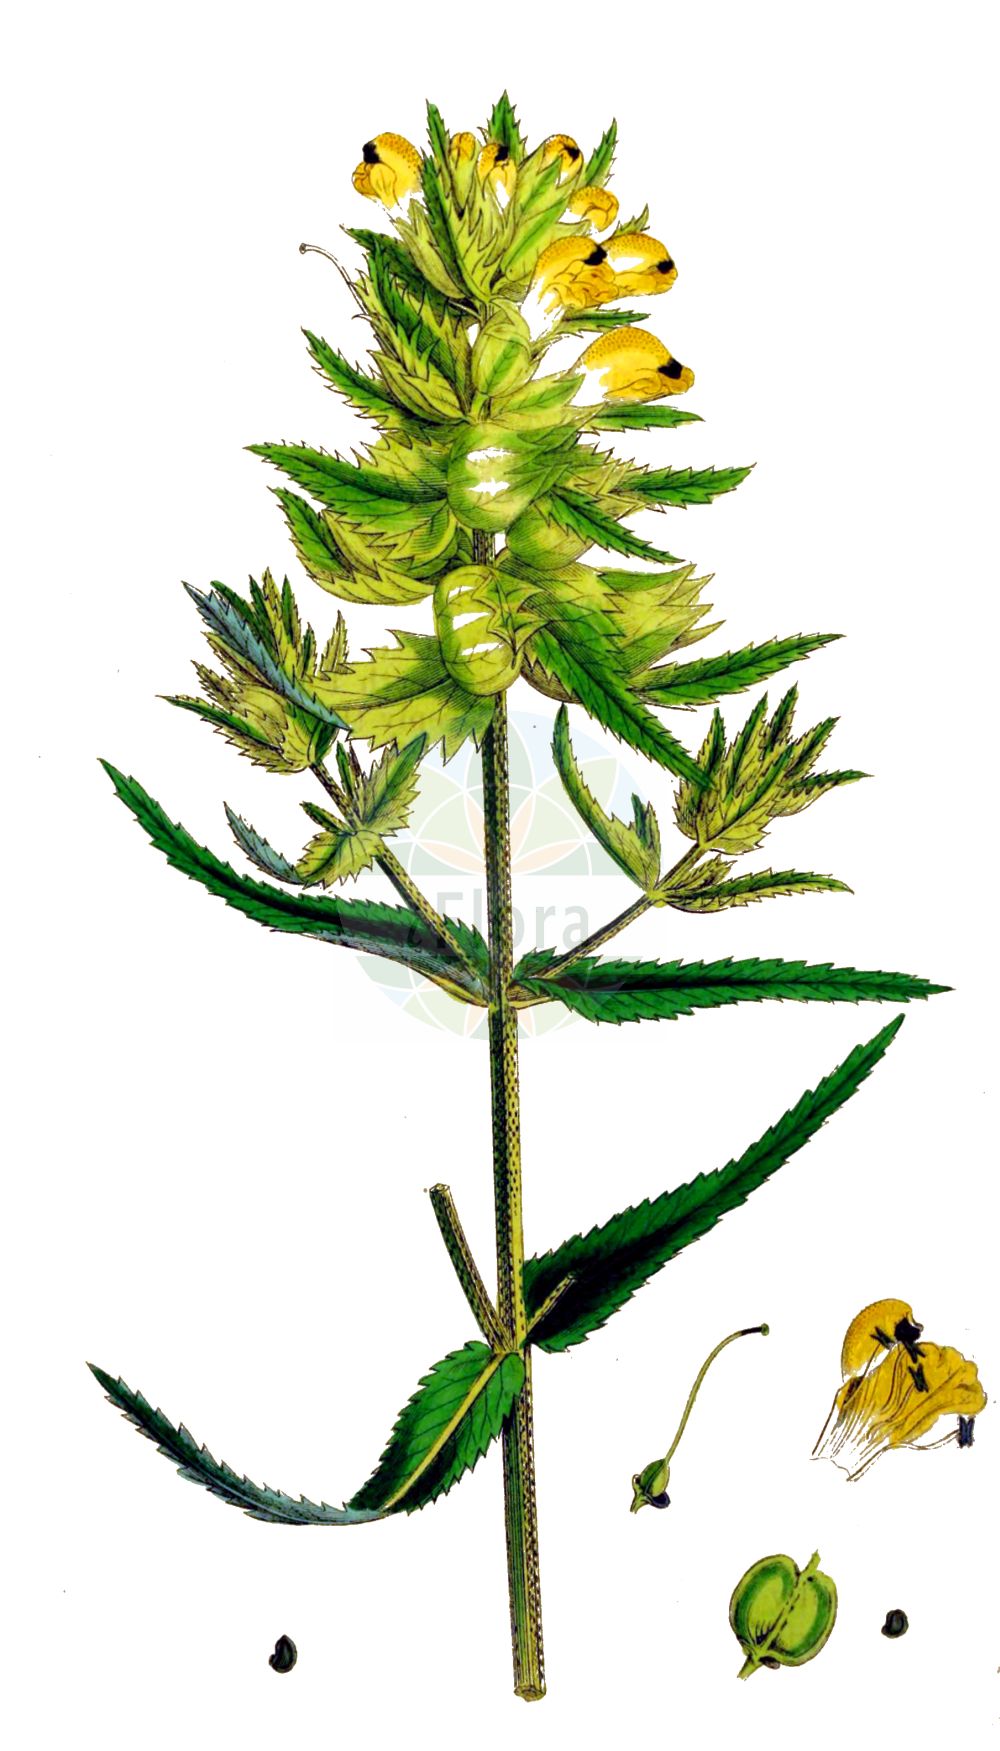 Historische Abbildung von Rhinanthus angustifolius (Acker-Klappertopf - Late-flowering Yellow Rattle). Das Bild zeigt Blatt, Bluete, Frucht und Same. ---- Historical Drawing of Rhinanthus angustifolius (Acker-Klappertopf - Late-flowering Yellow Rattle). The image is showing leaf, flower, fruit and seed.(Rhinanthus angustifolius,Acker-Klappertopf,Late-flowering Yellow Rattle,Alectorolophus angustifolius,Alectorolophus glaber,Alectorolophus major,Alectorolophus major Rchb. subsp.,Alectorolophus serotinus,Rhinanthus angustifolius,Rhinanthus glaber,Rhinanthus paludosus,Rhinanthus serotinus,Rhinanthus serotinus subsp. polycladus,Acker-Klappertopf,Grosser Klappertopf,Late-flowering Yellow Rattle,Greater Yellow Rattle,Narrow-leaved Yellow Rattle,Southern Yellow Rattle,Rhinanthus,Klappertopf,Yellow Rattle,Orobanchaceae,Sommerwurzgewächse,Broomrape family,Blatt,Bluete,Frucht,Same,leaf,flower,fruit,seed,Sowerby (1790-1813))